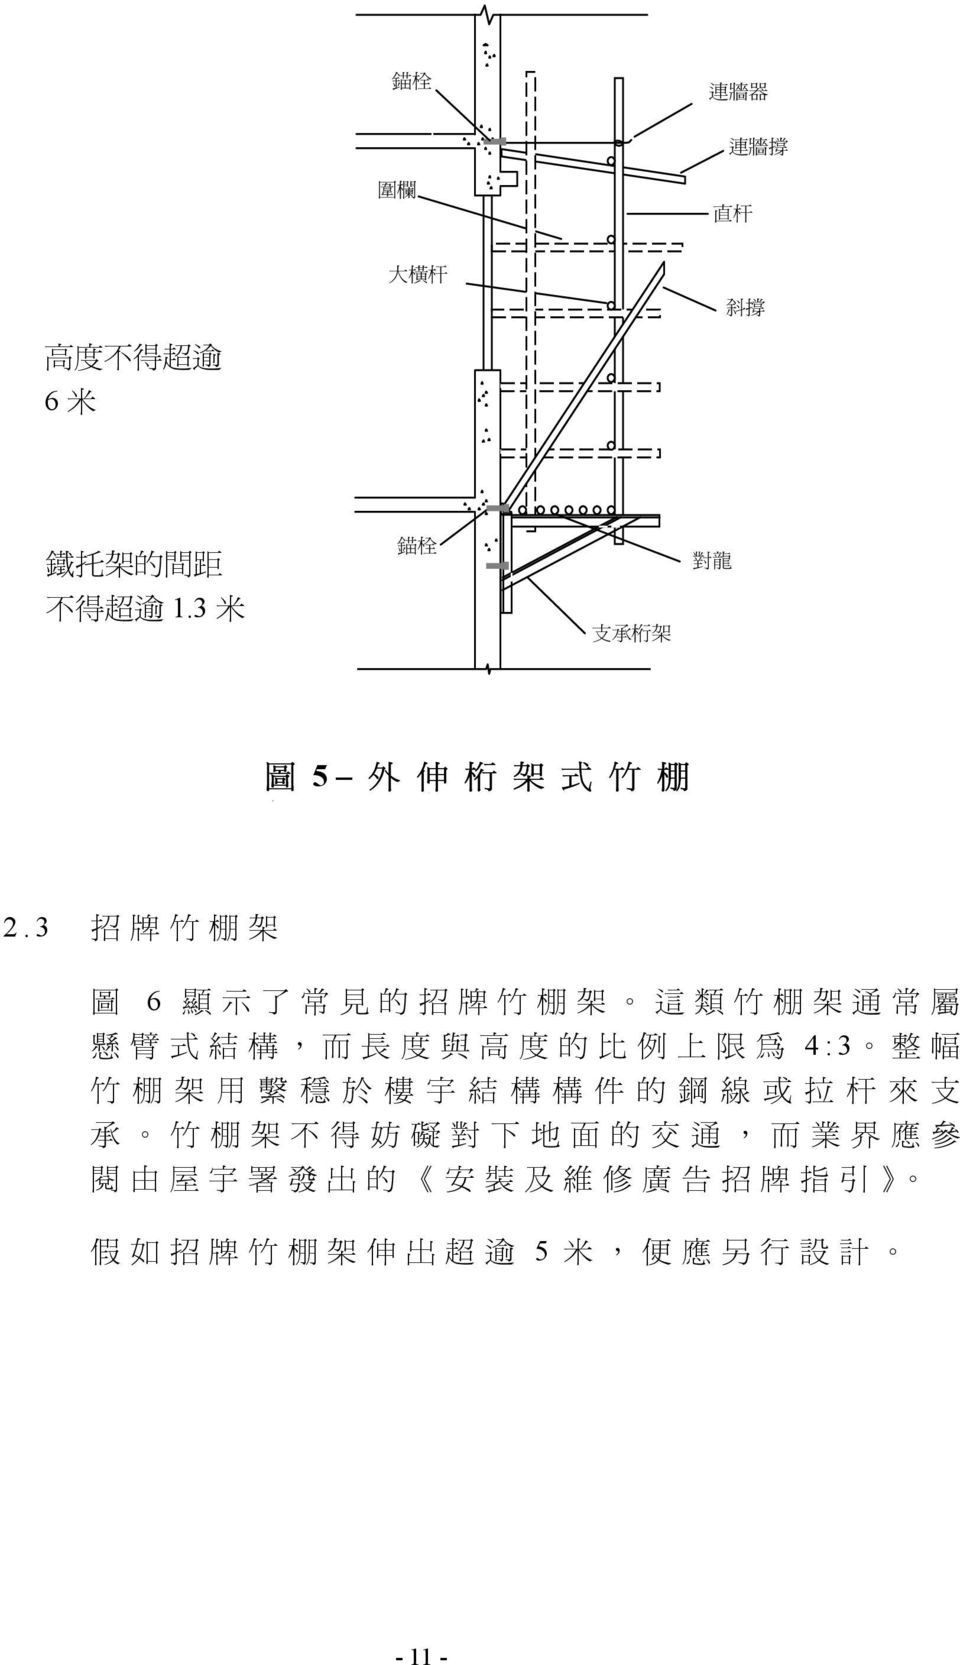 3 招 牌 竹 棚 架 圖 6 顯 示 了 常 見 的 招 牌 竹 棚 架 這 類 竹 棚 架 通 常 屬 懸 臂 式 結 構, 而 長 度 與 高 度 的 比 例 上 限 為 4:3